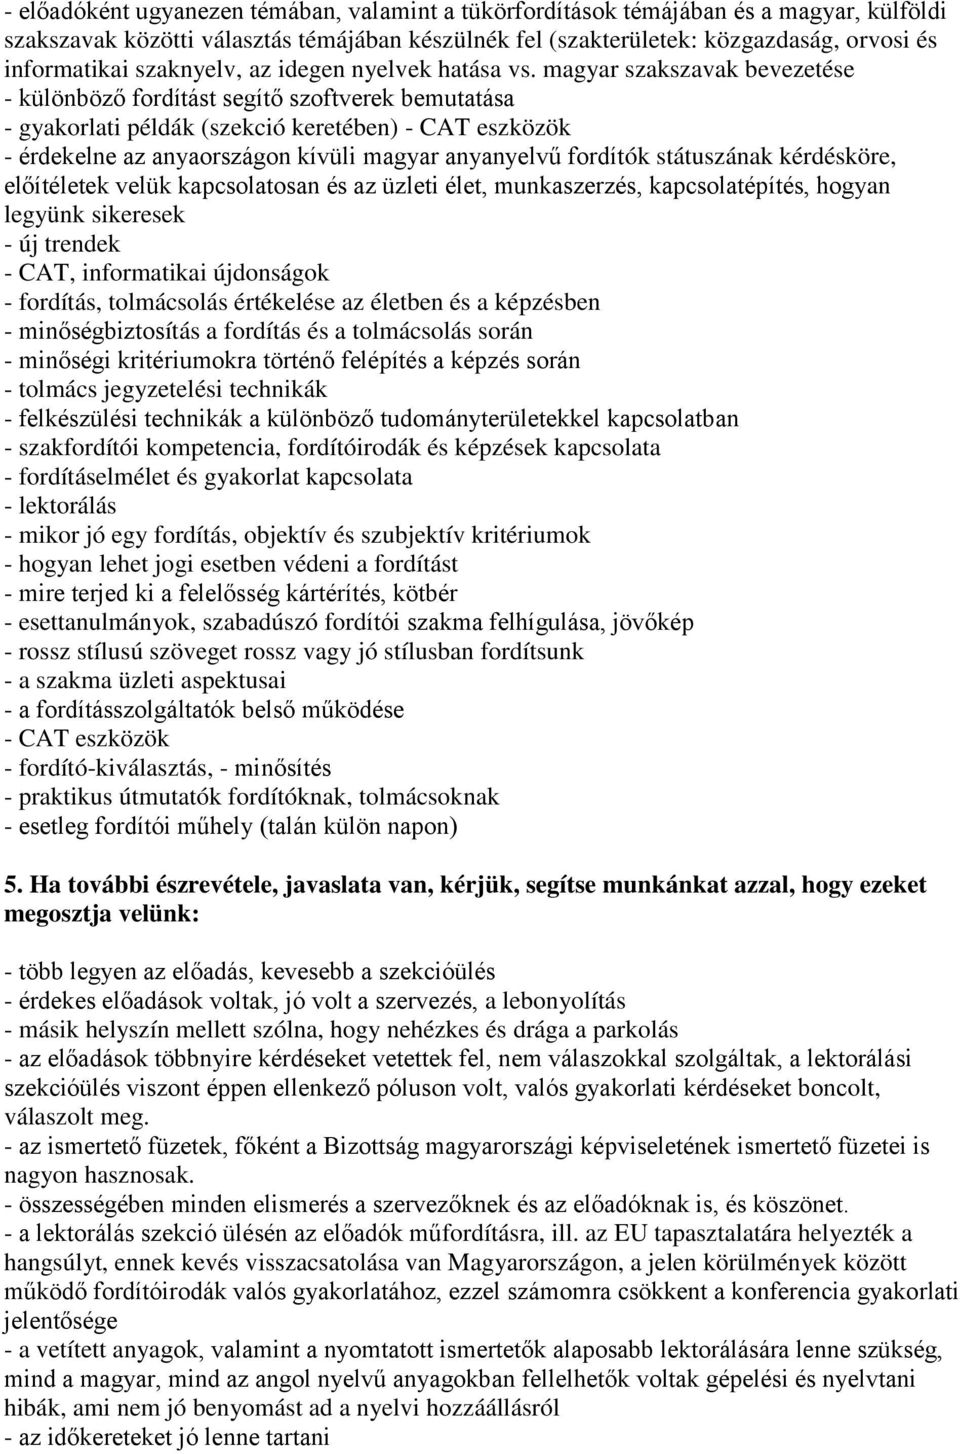 magyar szakszavak bevezetése - különböző fordítást segítő szoftverek bemutatása - gyakorlati példák (szekció keretében) - CAT eszközök - érdekelne az anyaországon kívüli magyar anyanyelvű fordítók